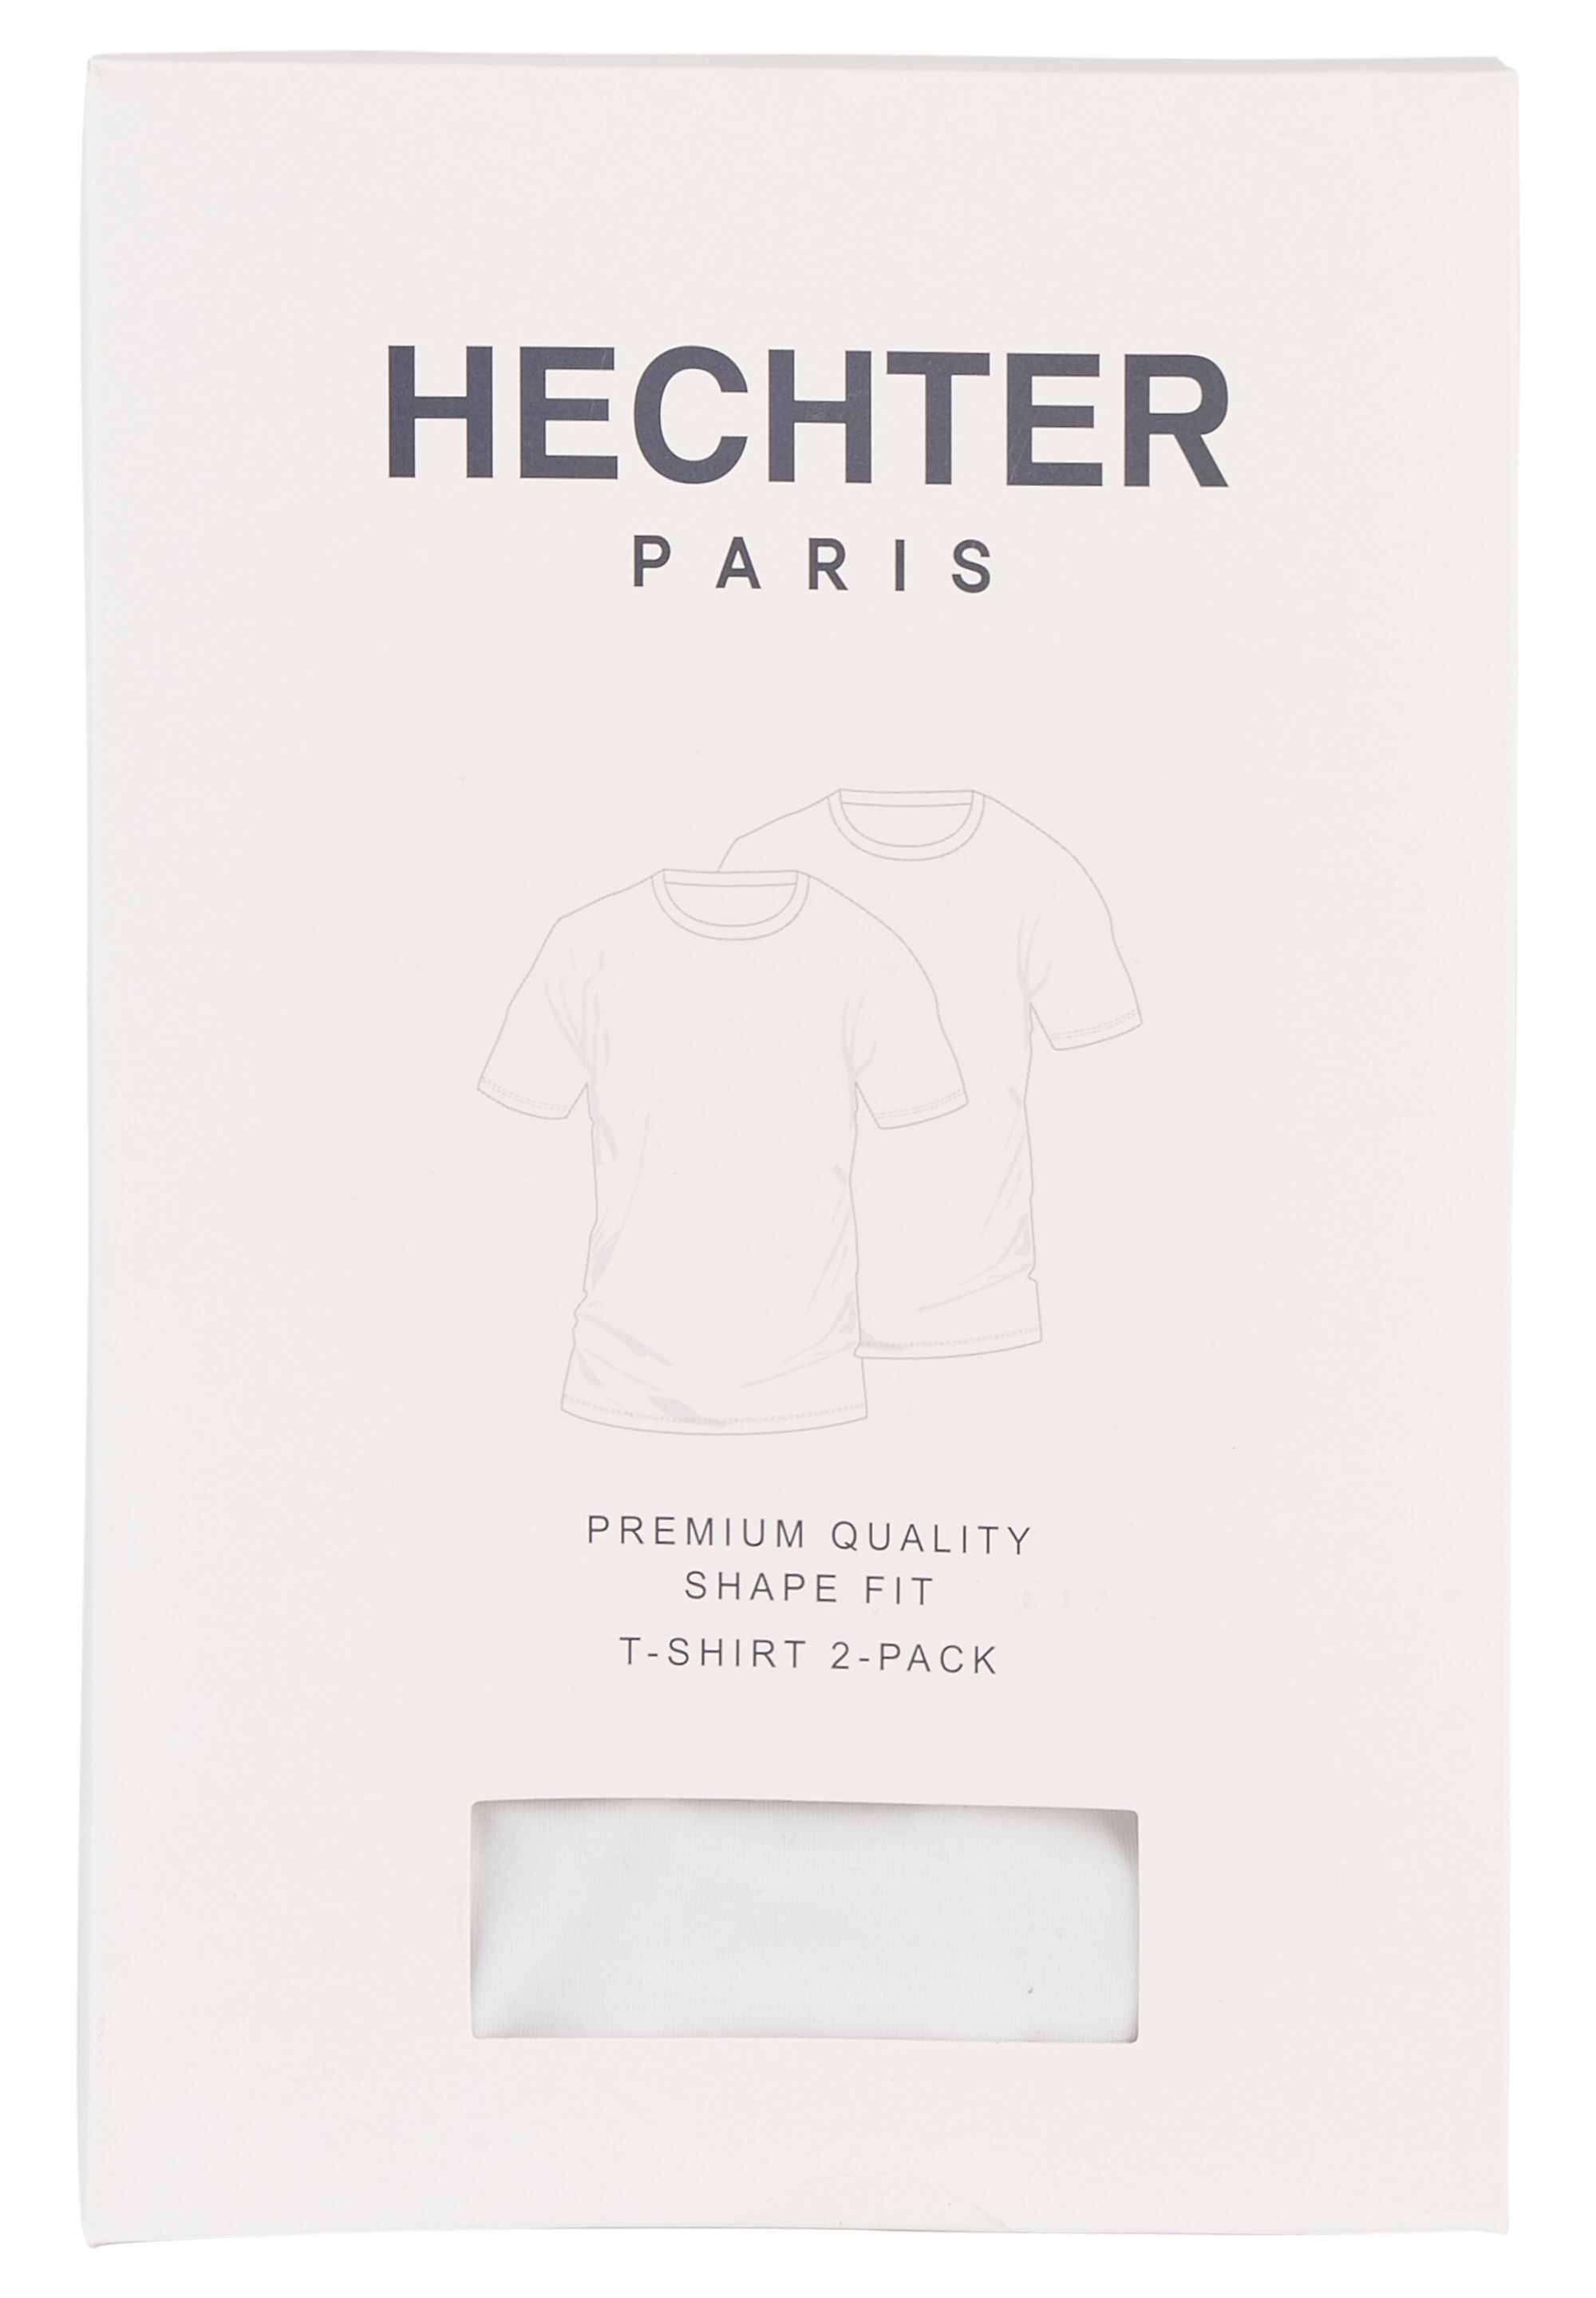 Schlichtes T-Shirt für Gelegenheit offizielle Der HECHTER Doppelpack | PARIS jede Onlineshop